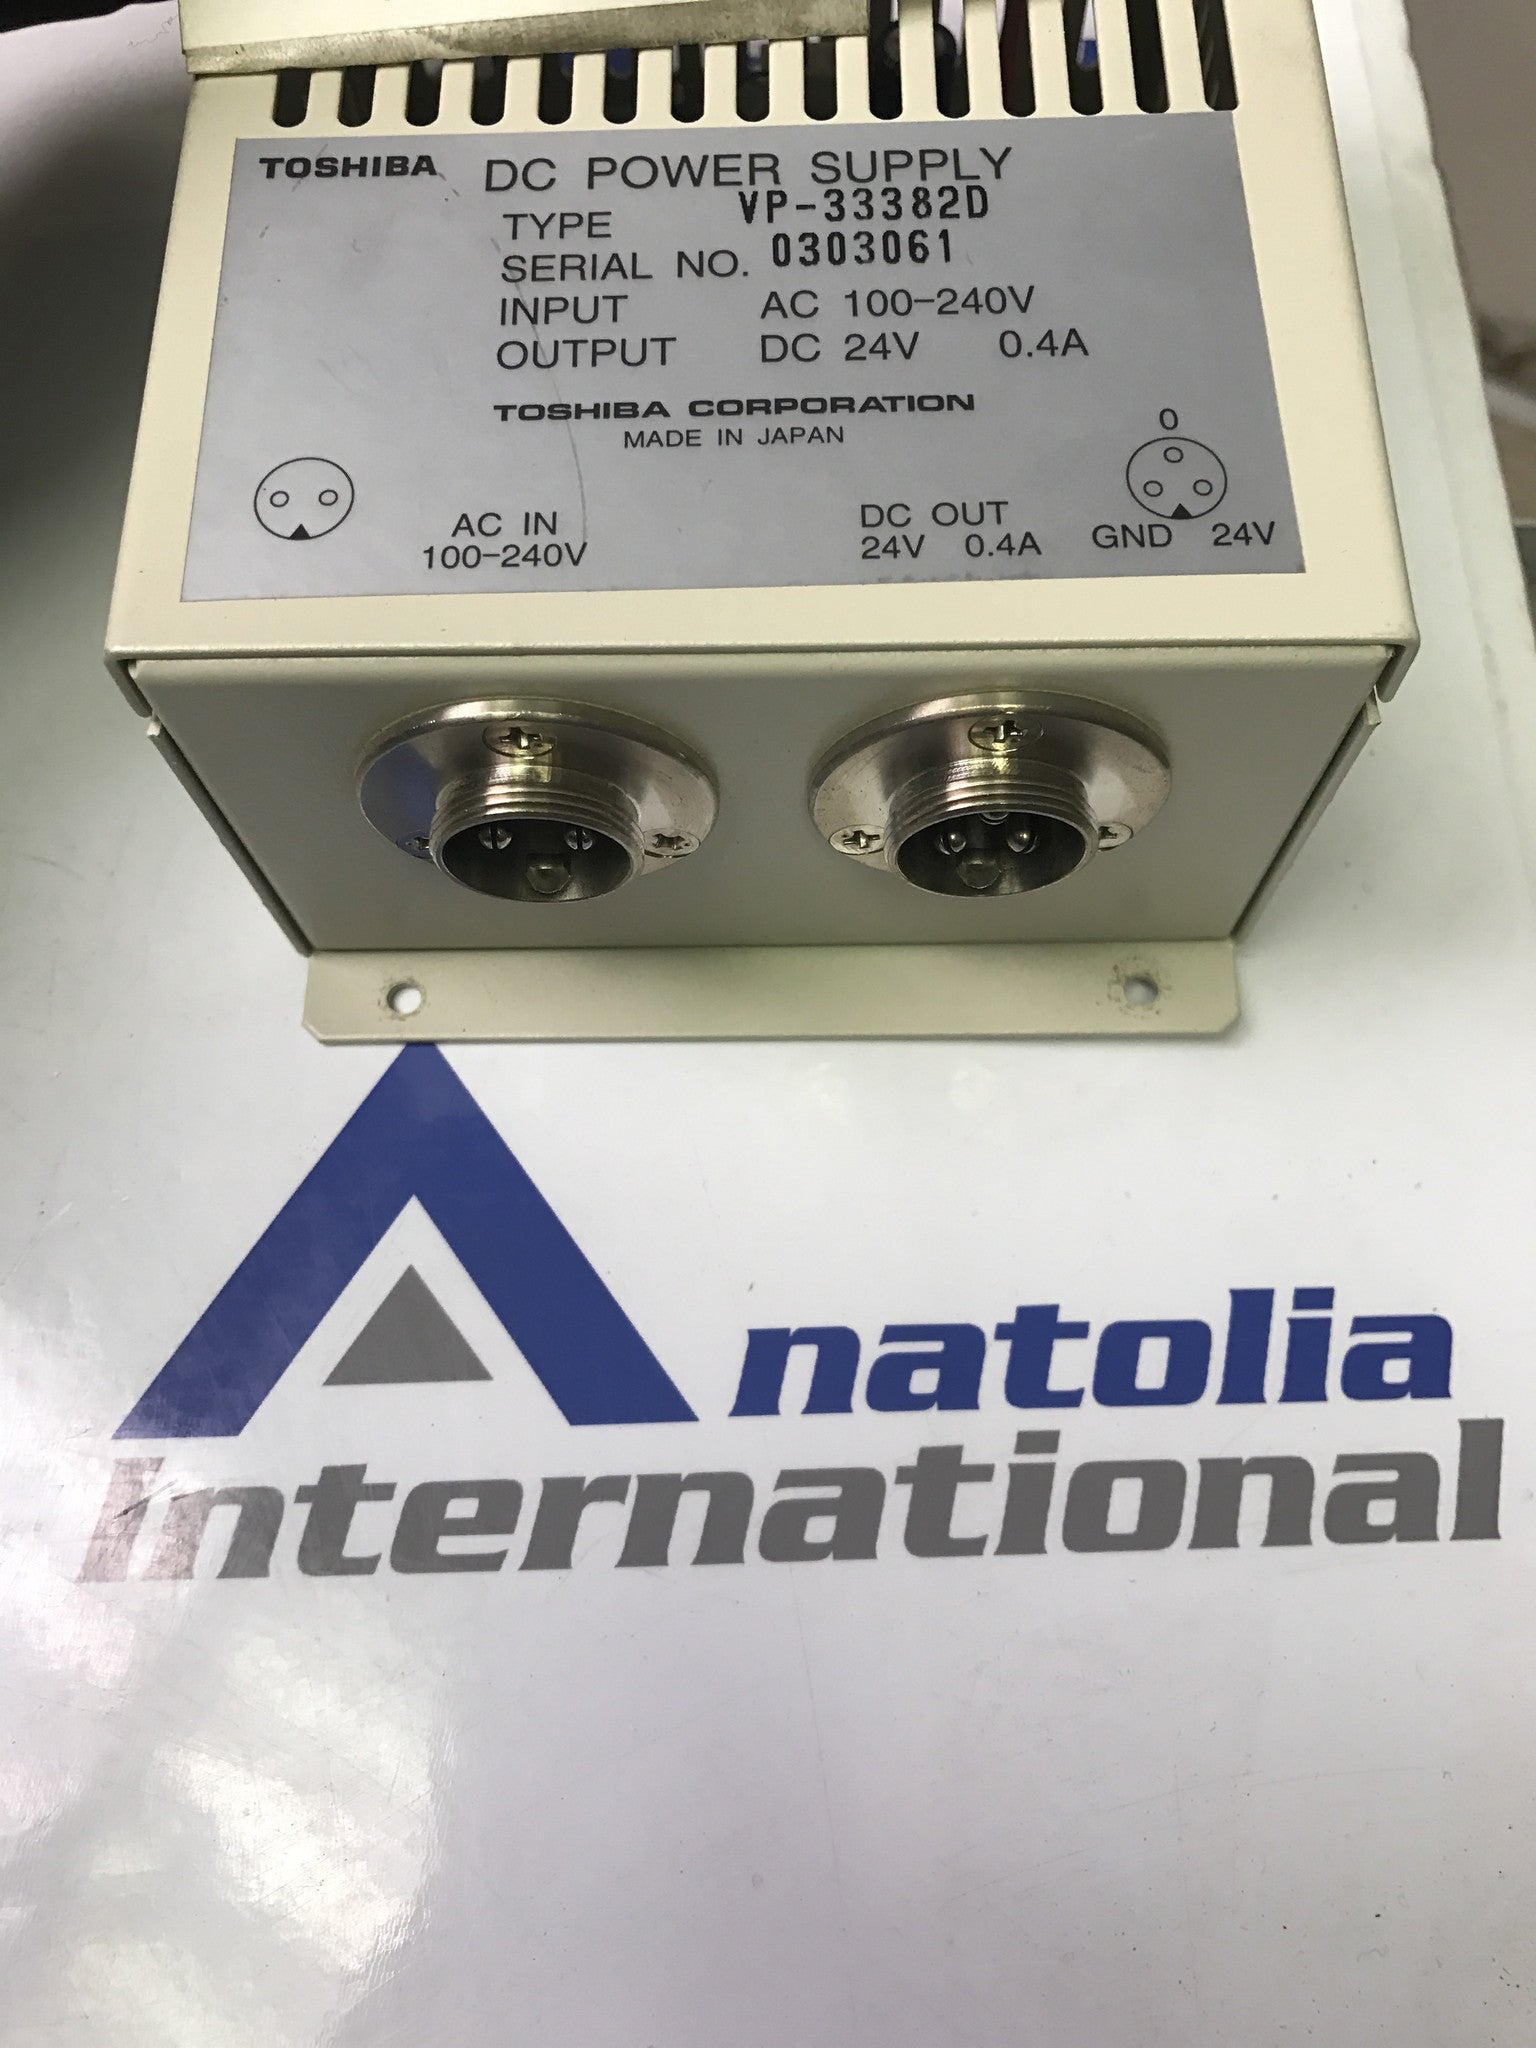 VP33382D DC Power Supply for Toshiba Infinix Cath Angio - Anatolia International, Parts